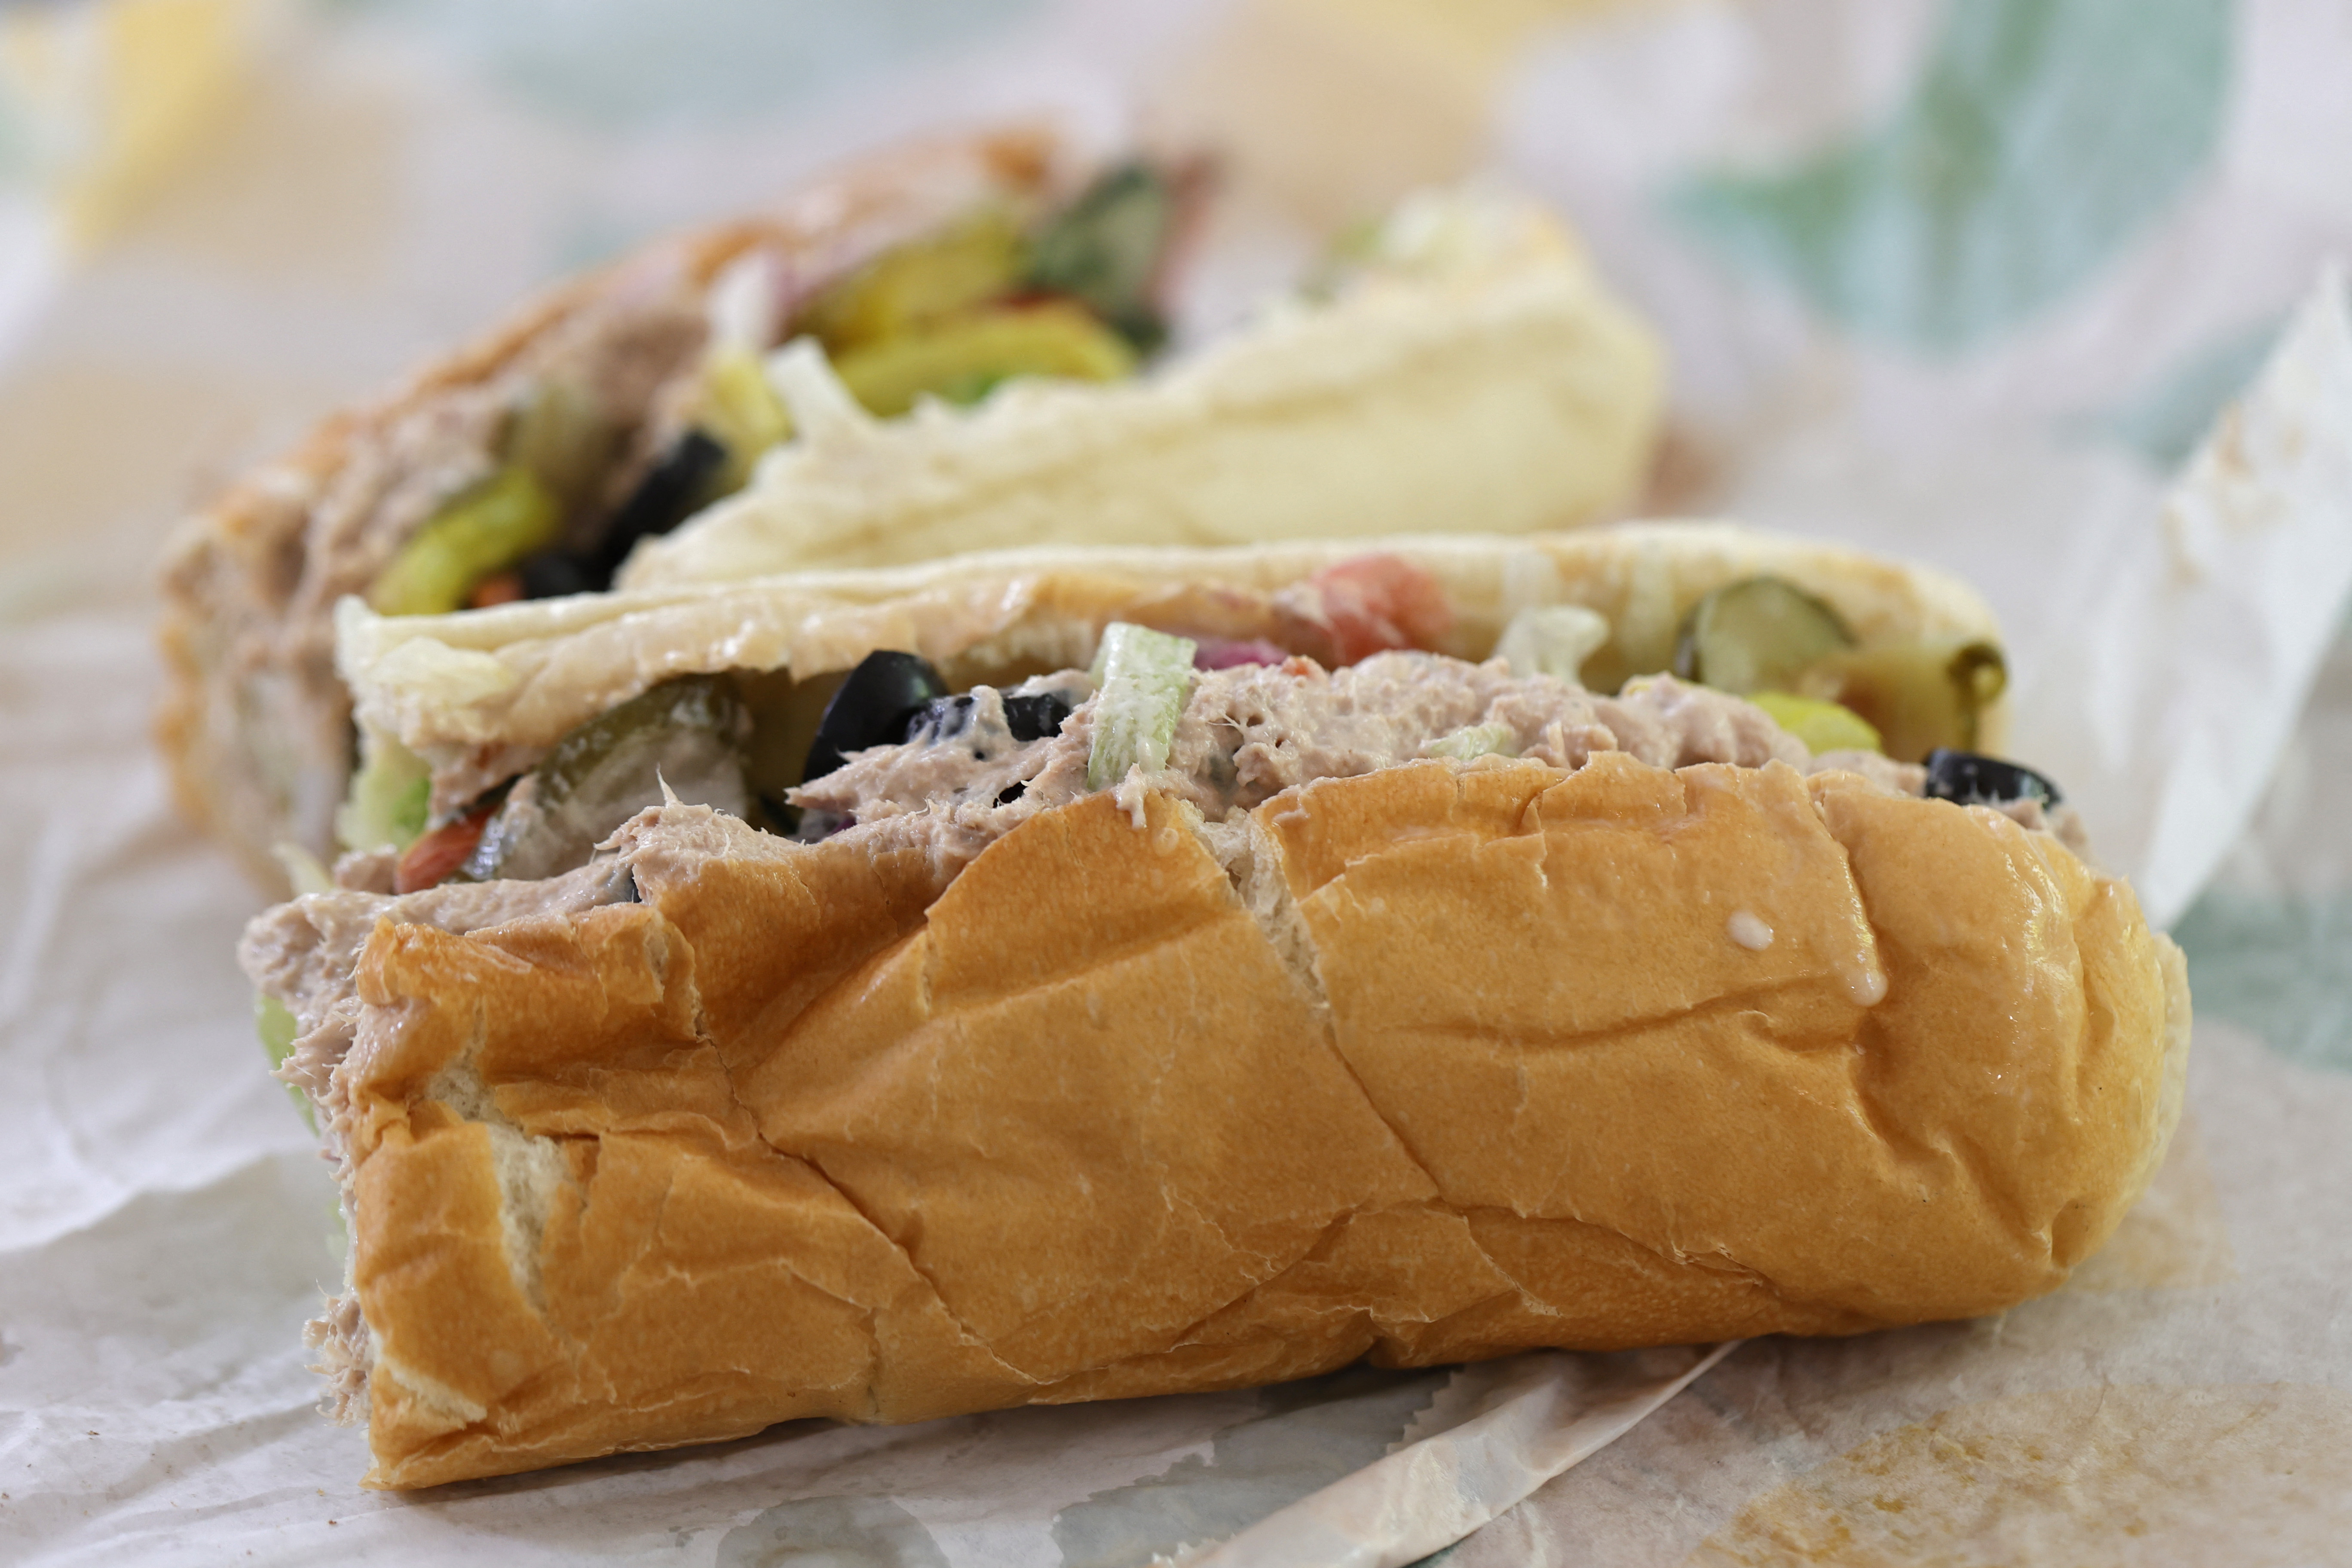 A DNS-vizsgálat nem talált tonhalat a Subway tonhalas szendvicsében